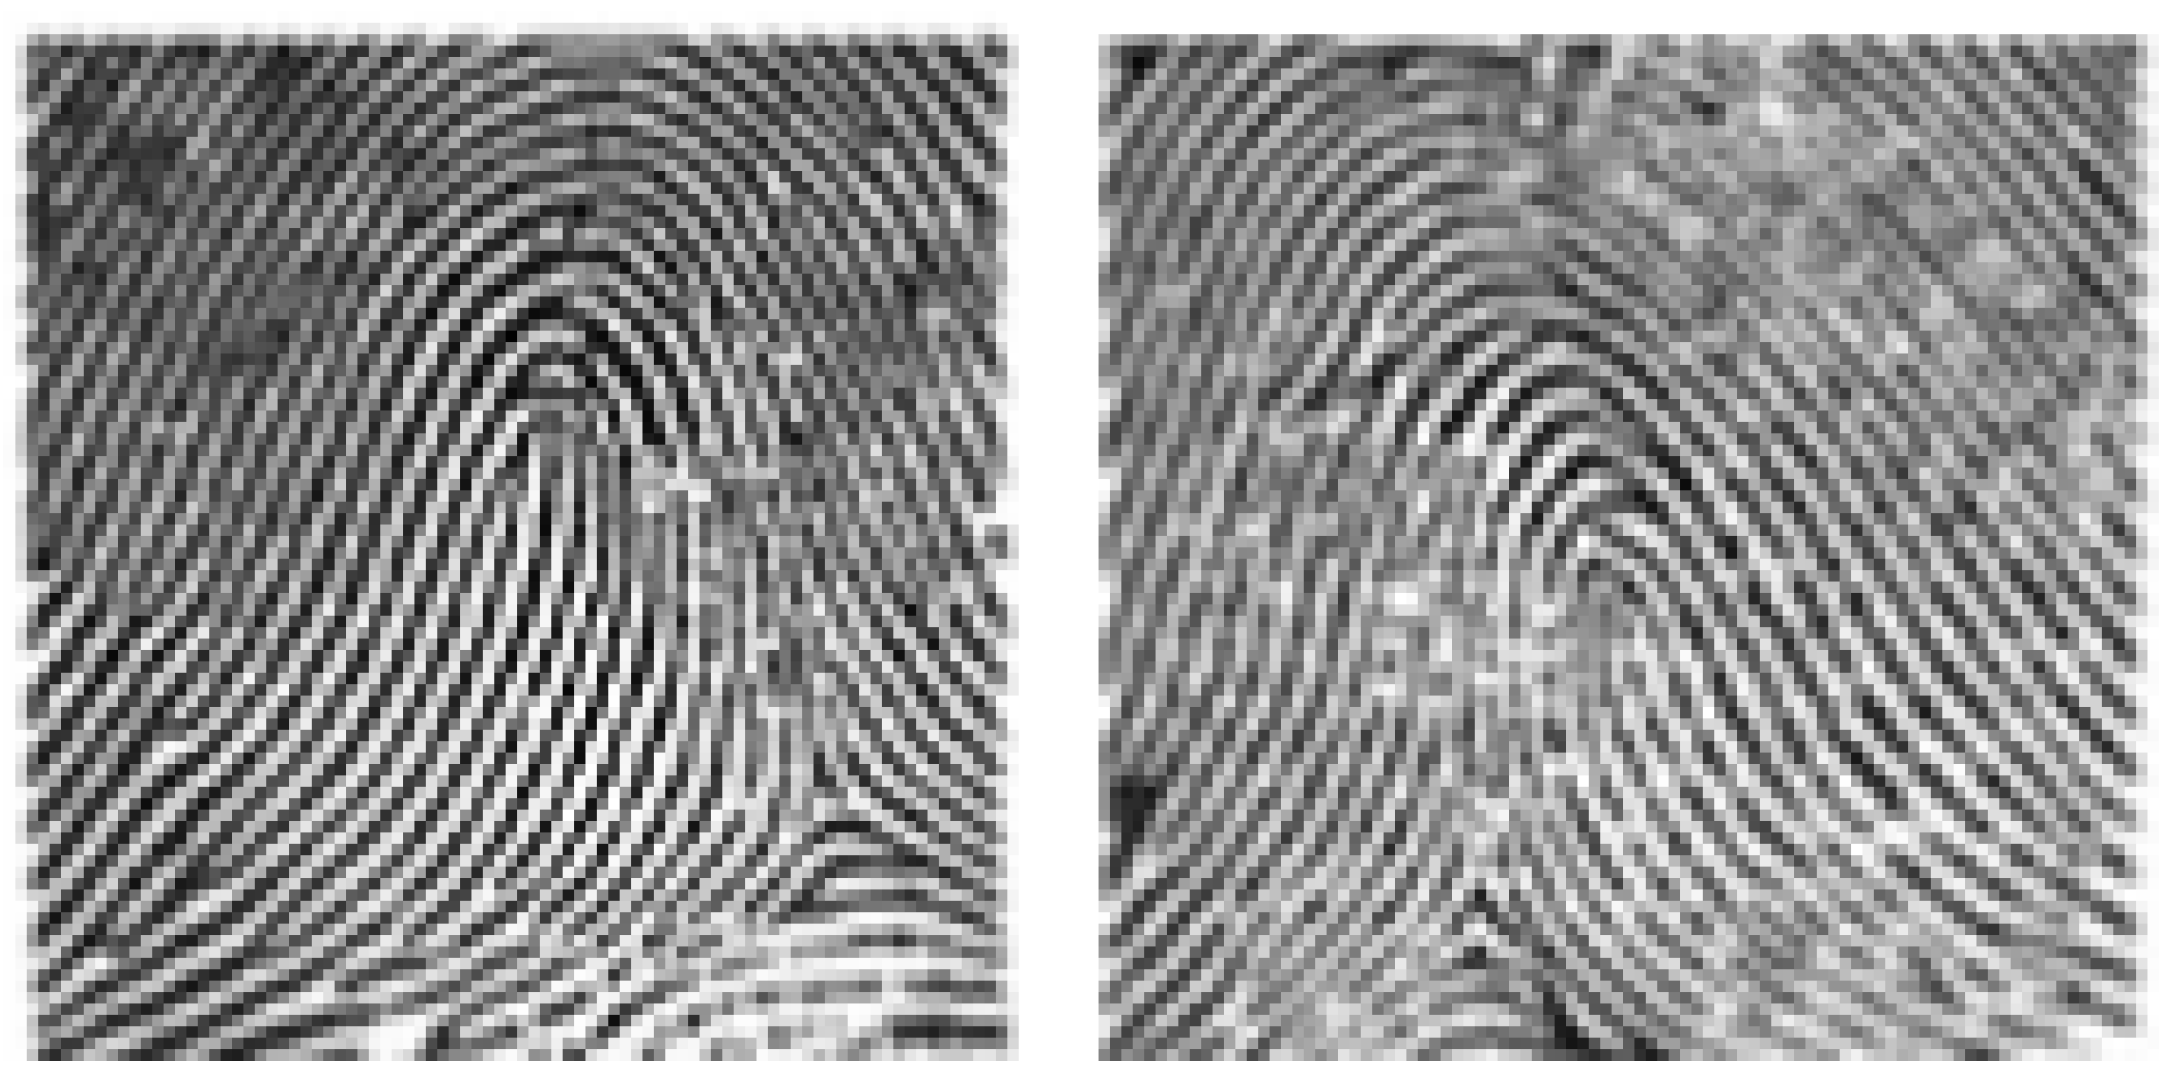 loop fingerprints